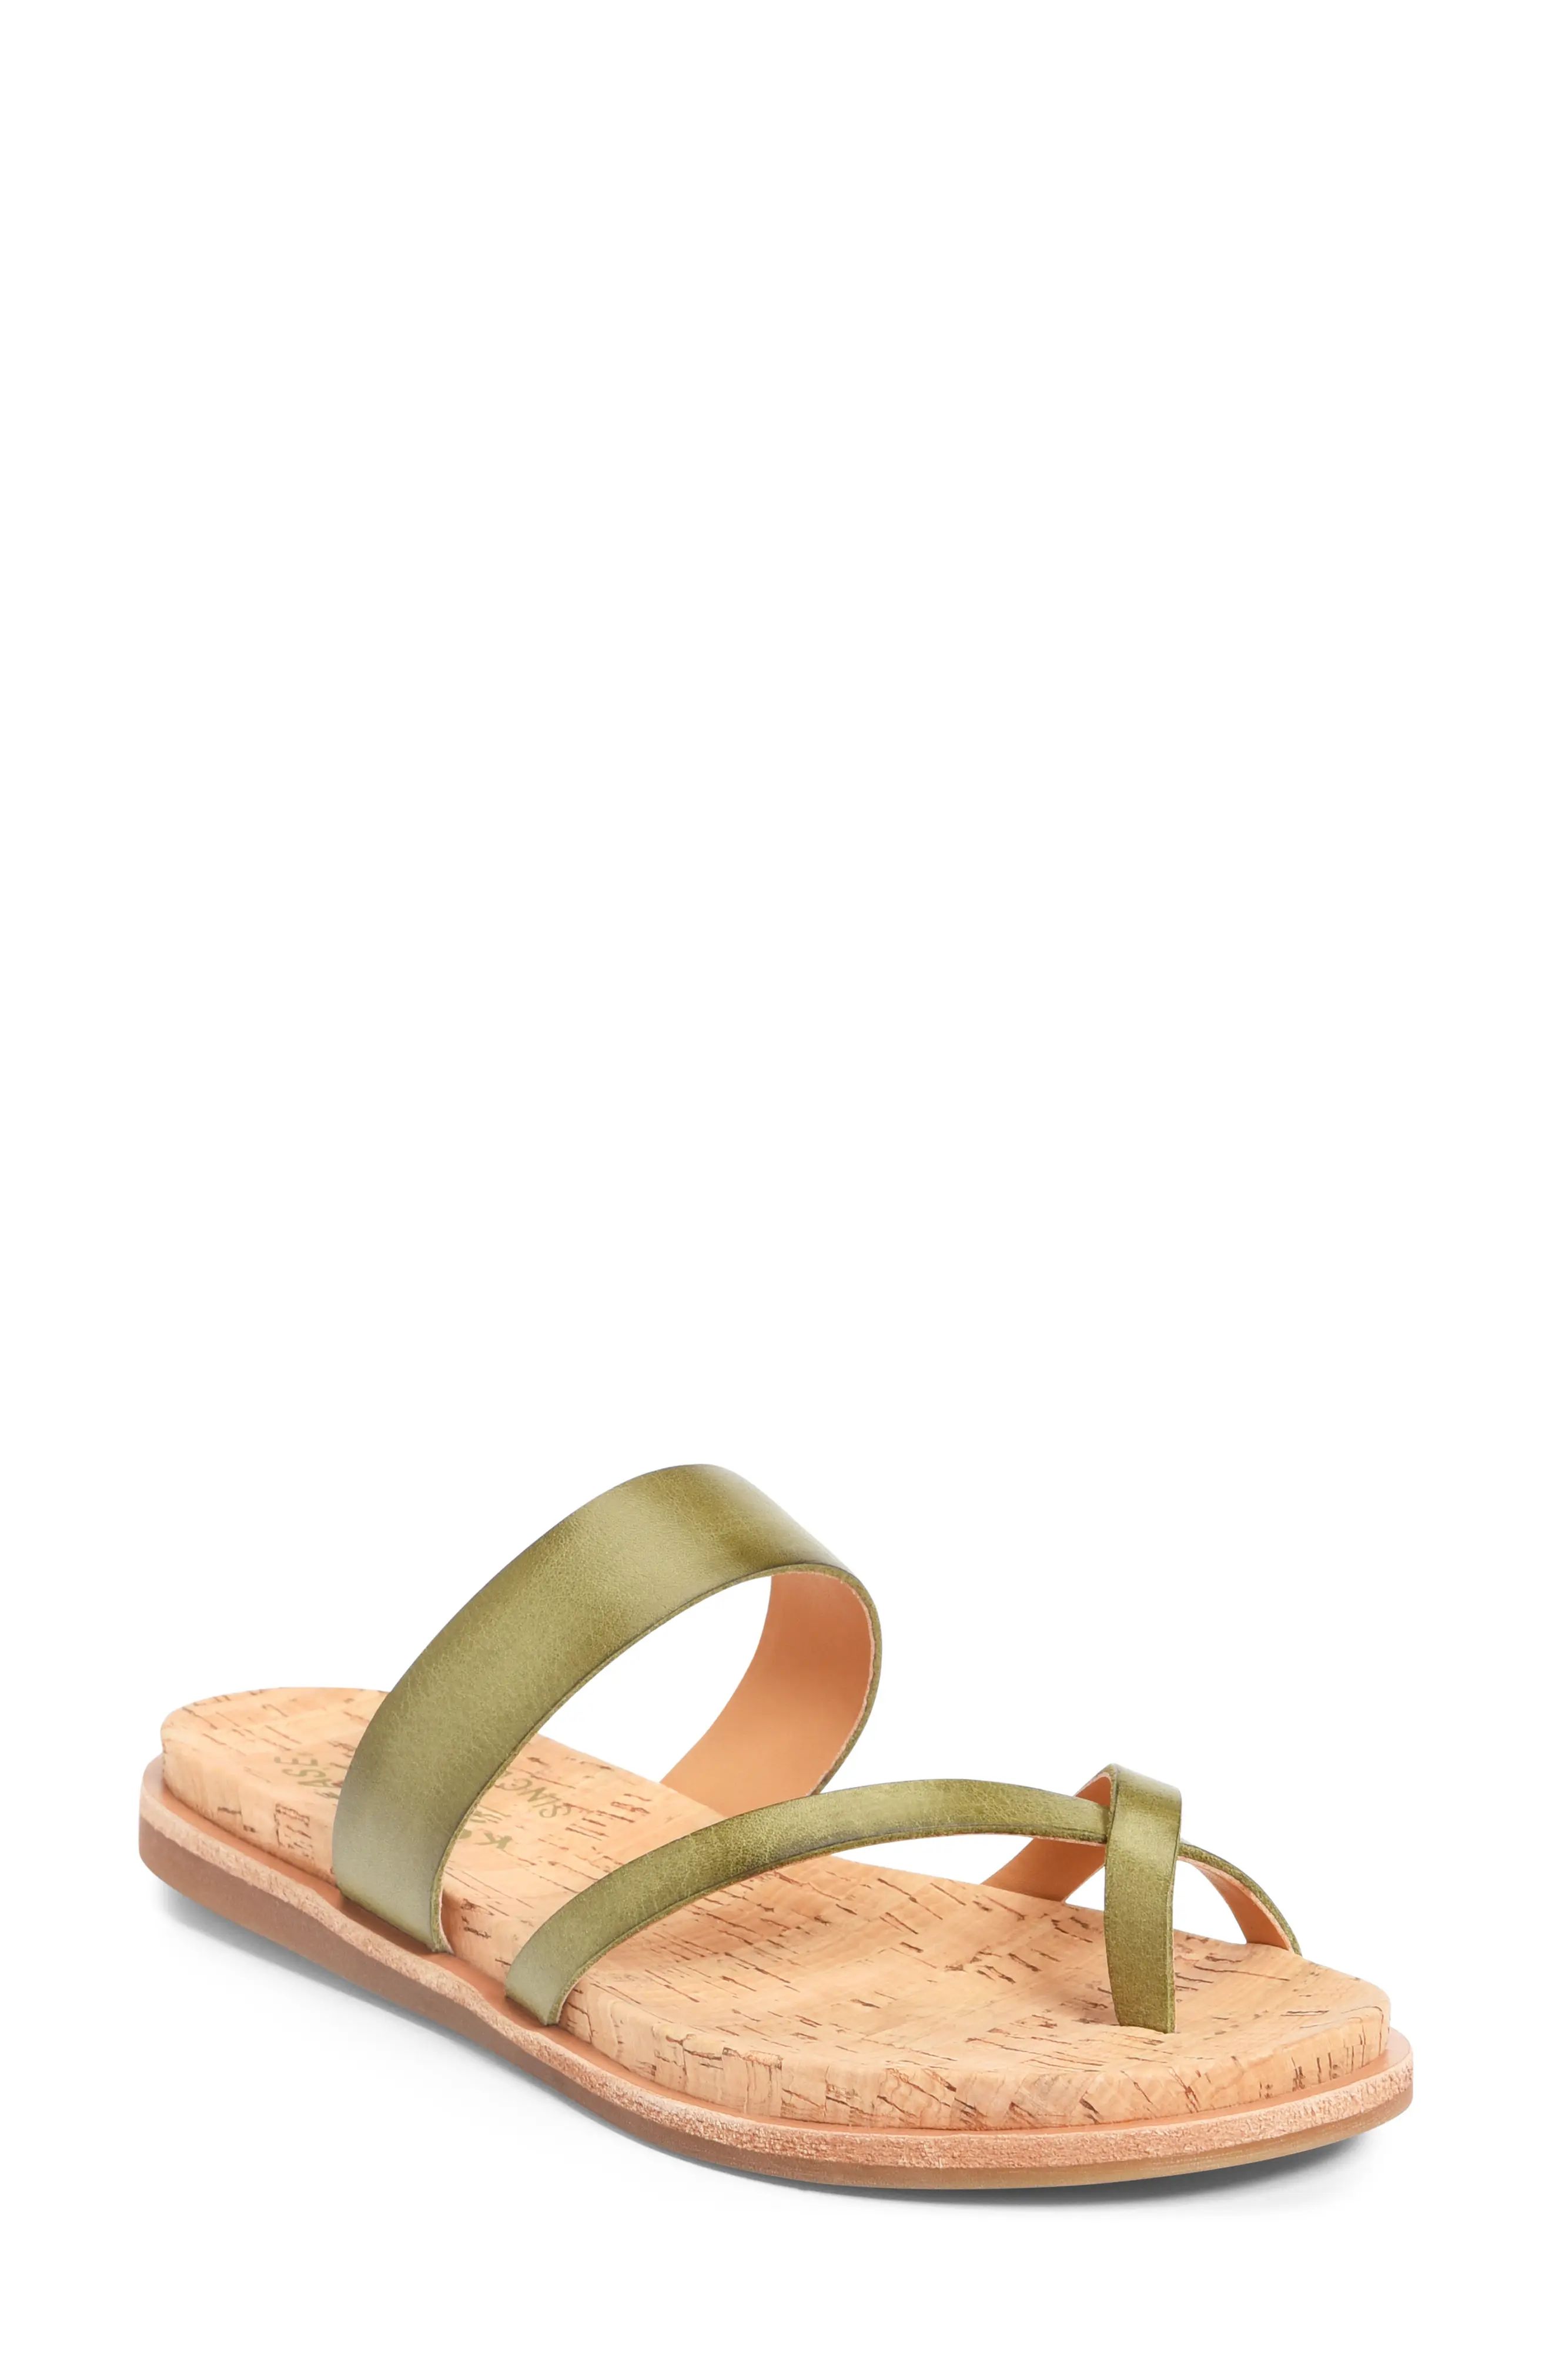 Kork-Ease(R) Belinda Slide Sandal in Light Green Leather at Nordstrom, Size 11 | Nordstrom